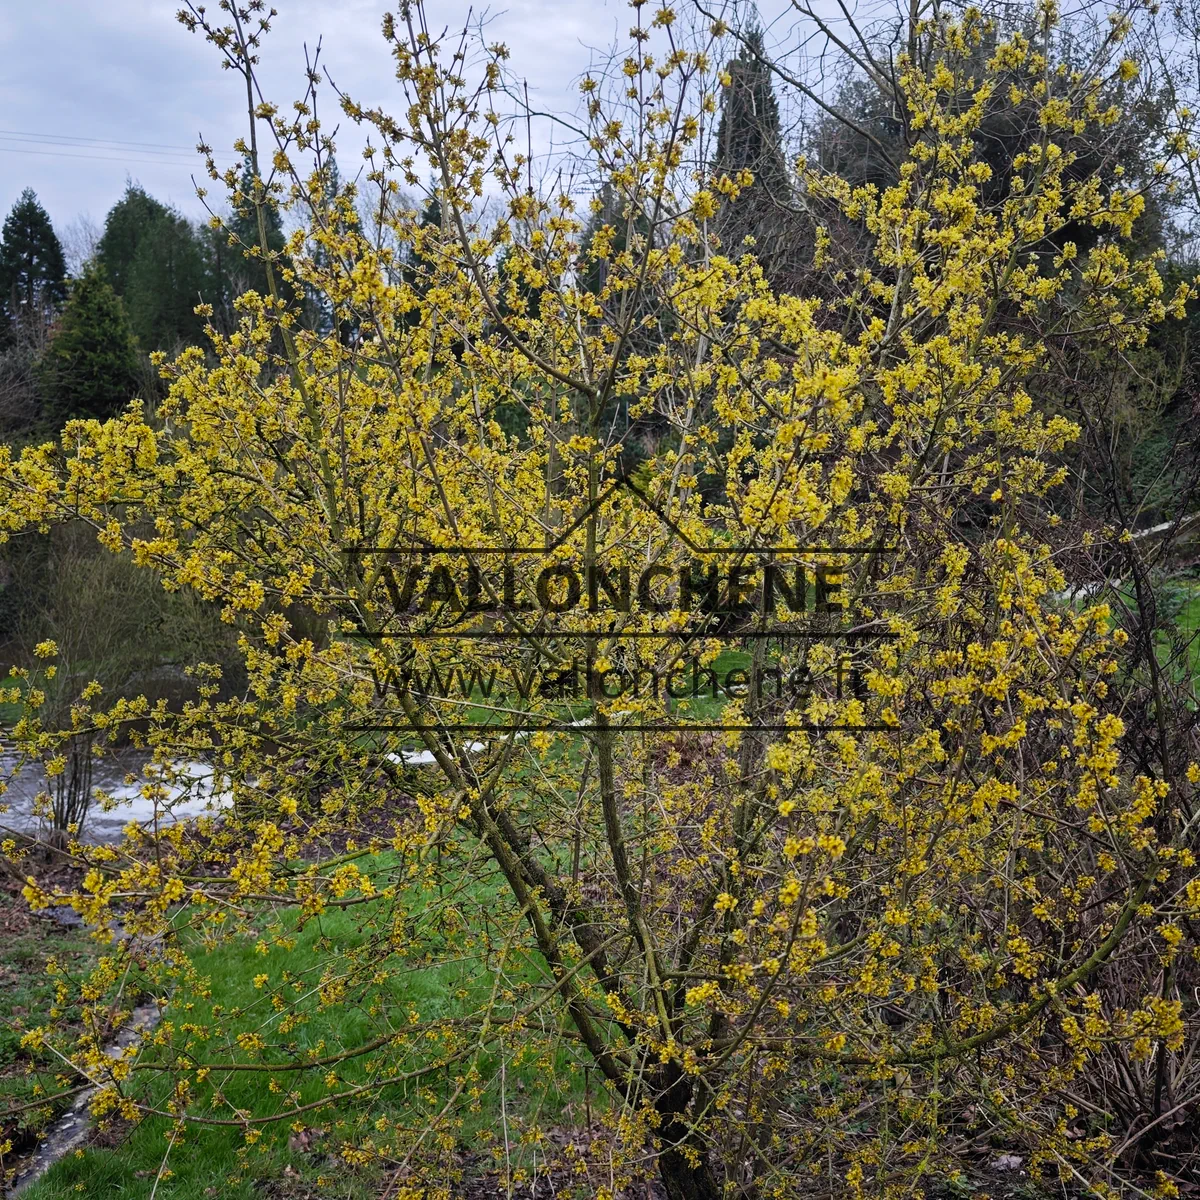 Specimen of a CORNUS mas 'Jolico' covered in flowers in February